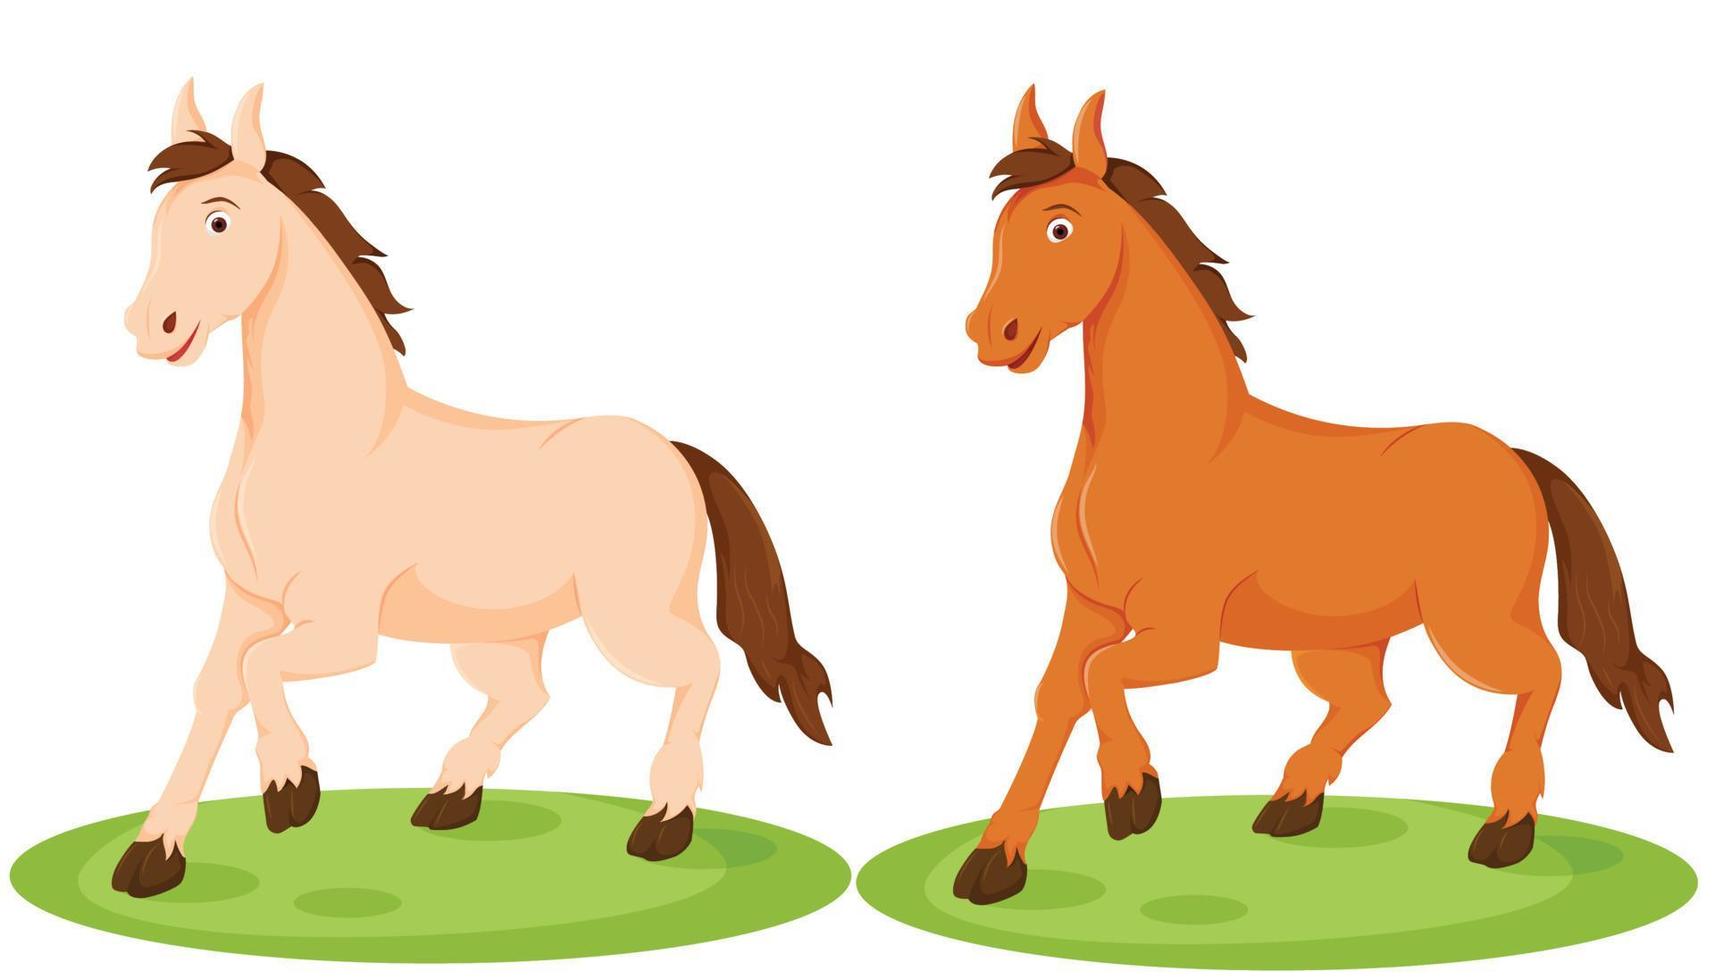 dois cavalos felizes em pose de corrida com animais de desenho animado de cores diferentes vetor